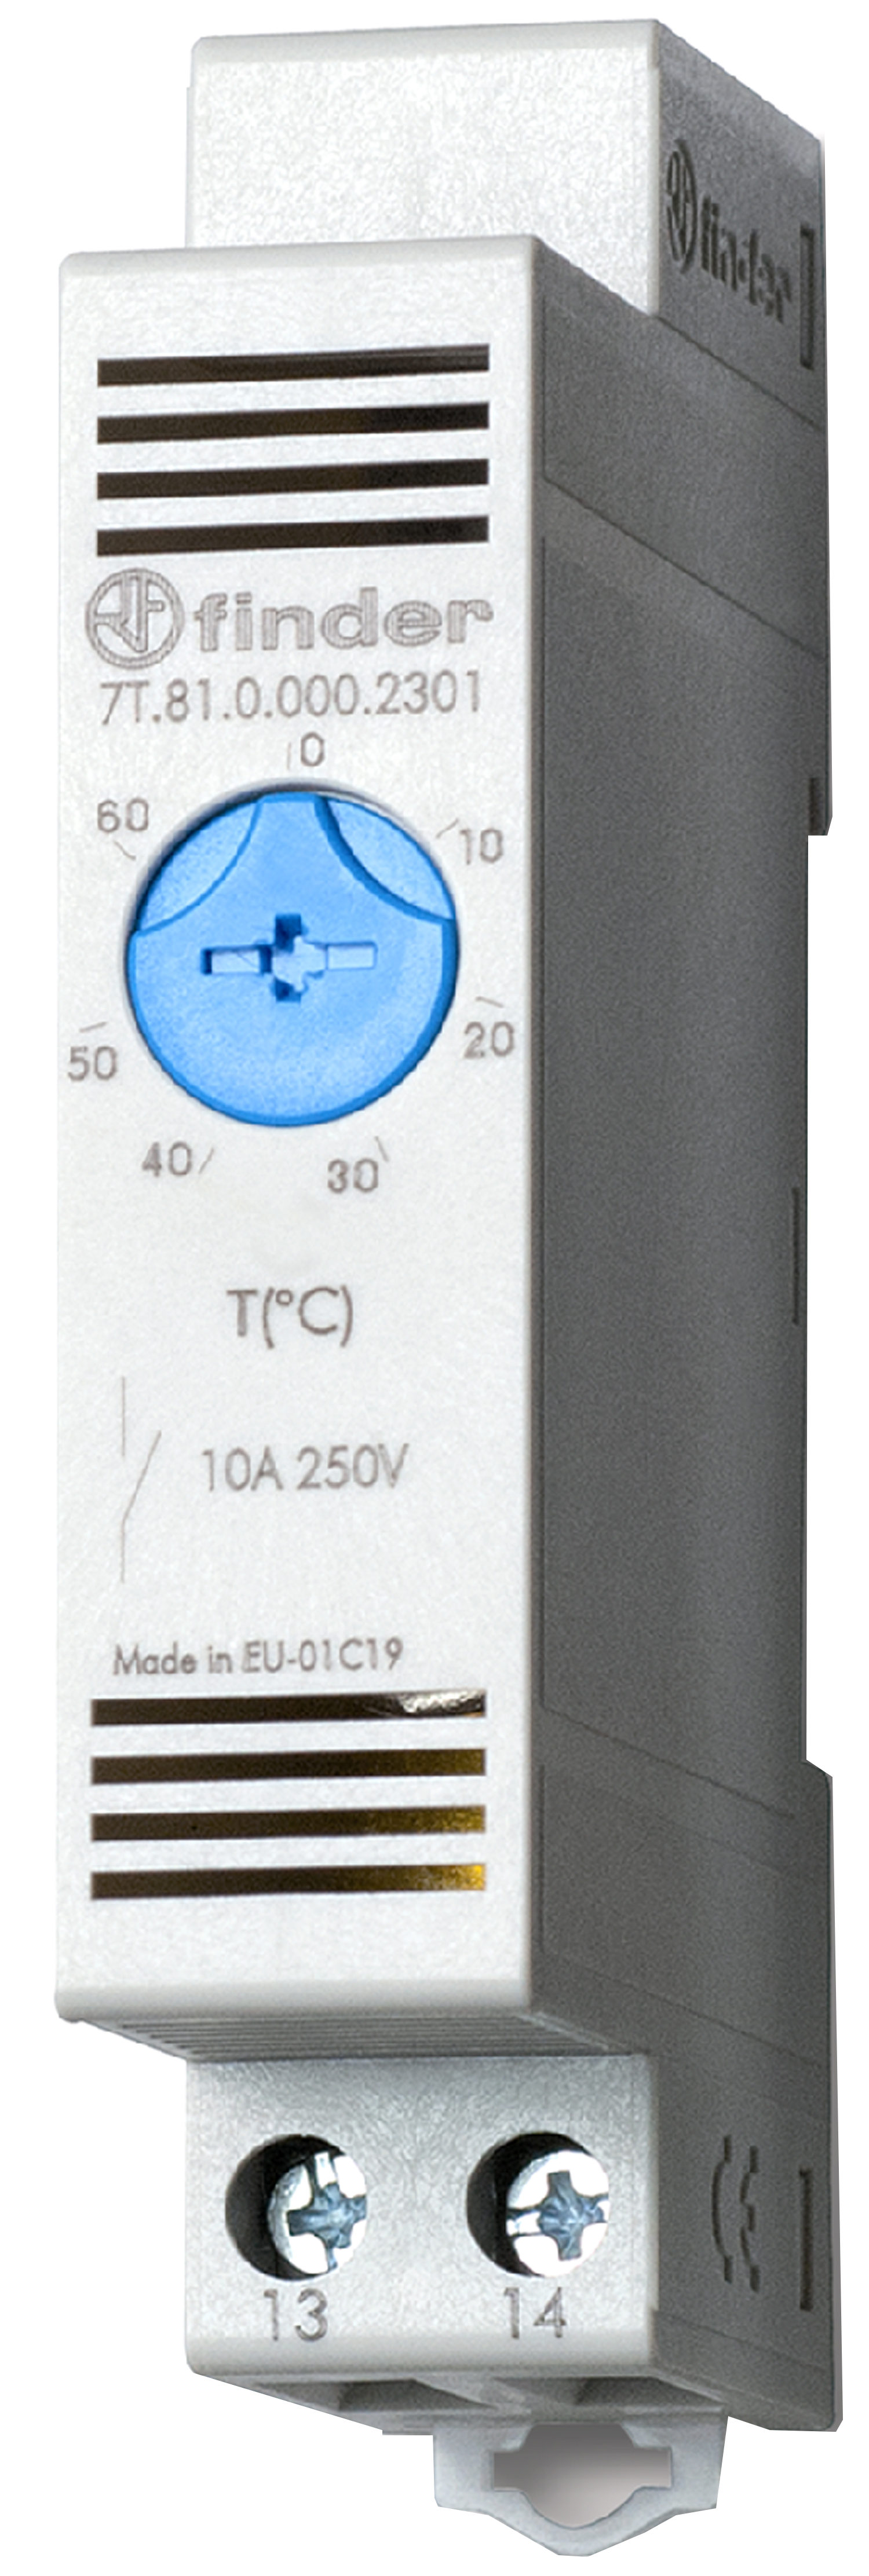 Thermostaat voor schakelkast, op rail 17,5 mm breed, 1 maakcontact 10 A, instelbaar van -20